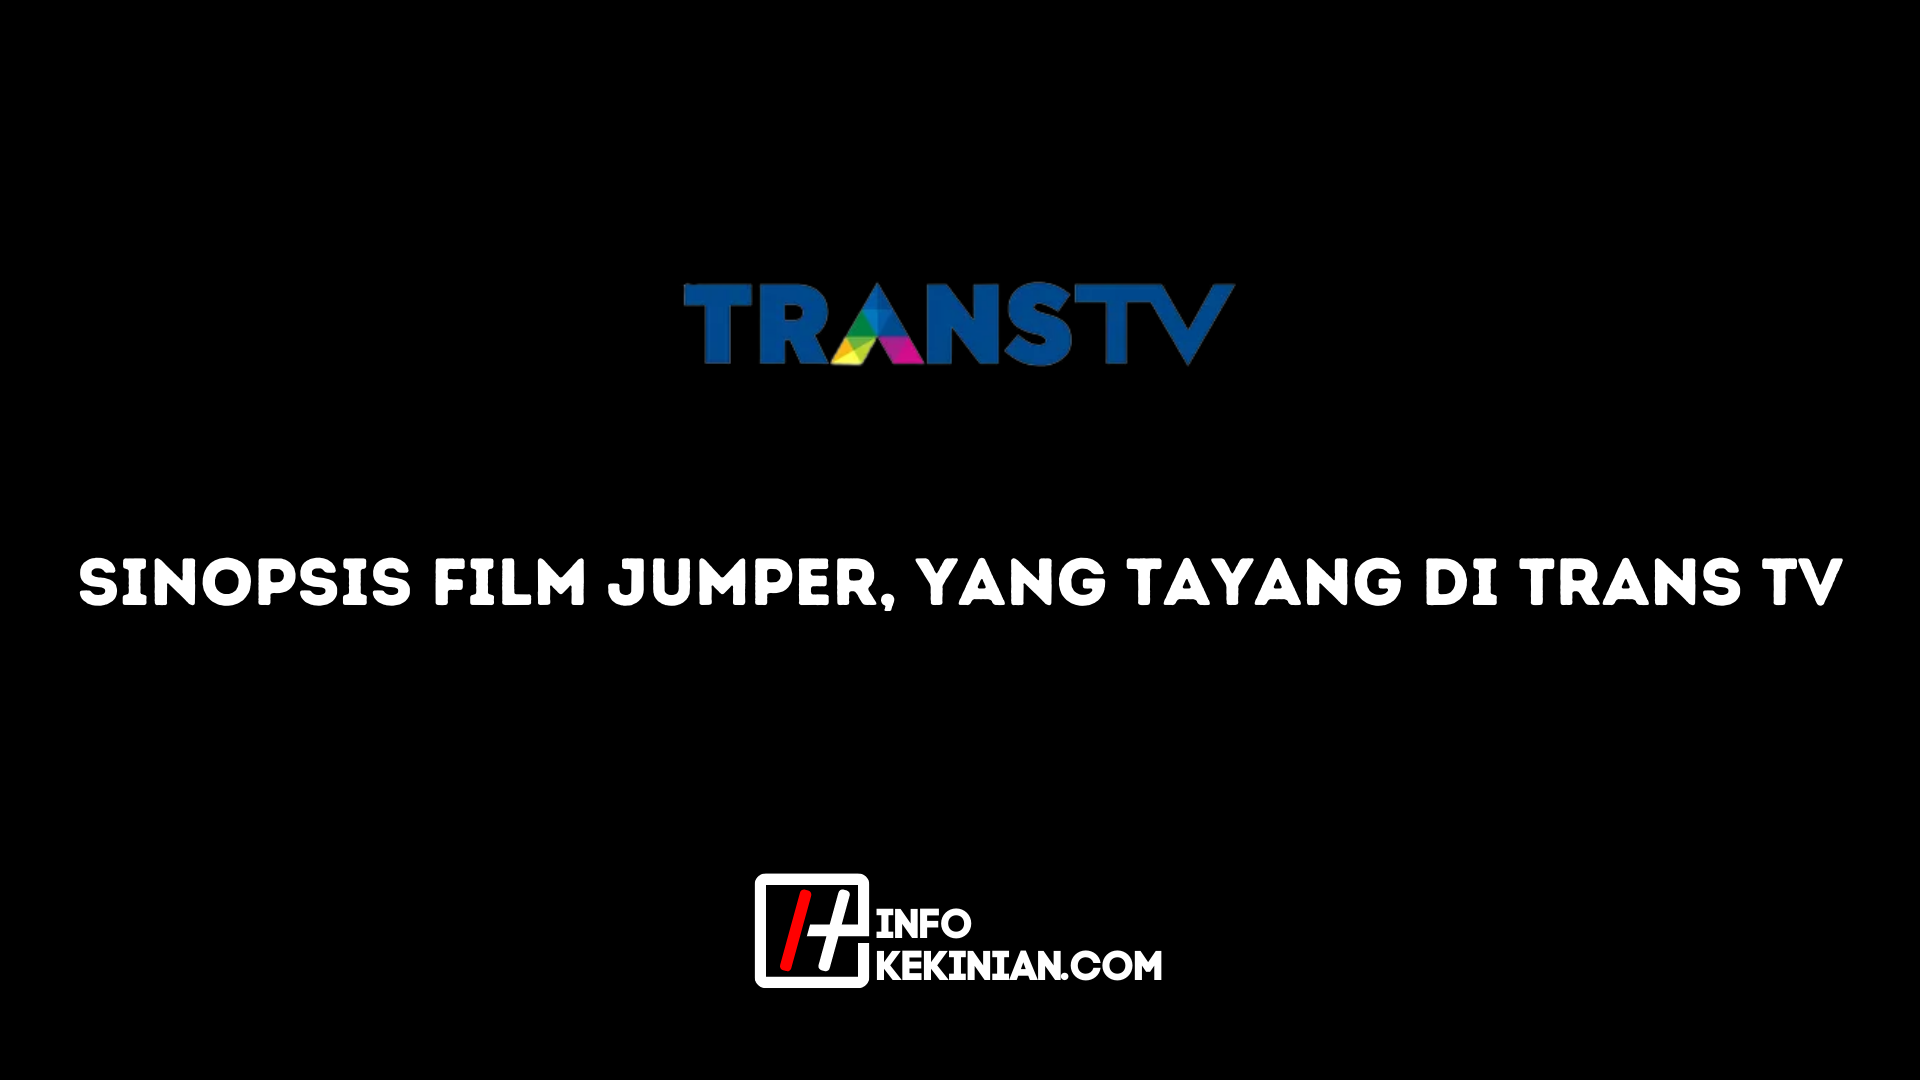 Sinopsis Film Jumper yang Tayang di Trans Tv